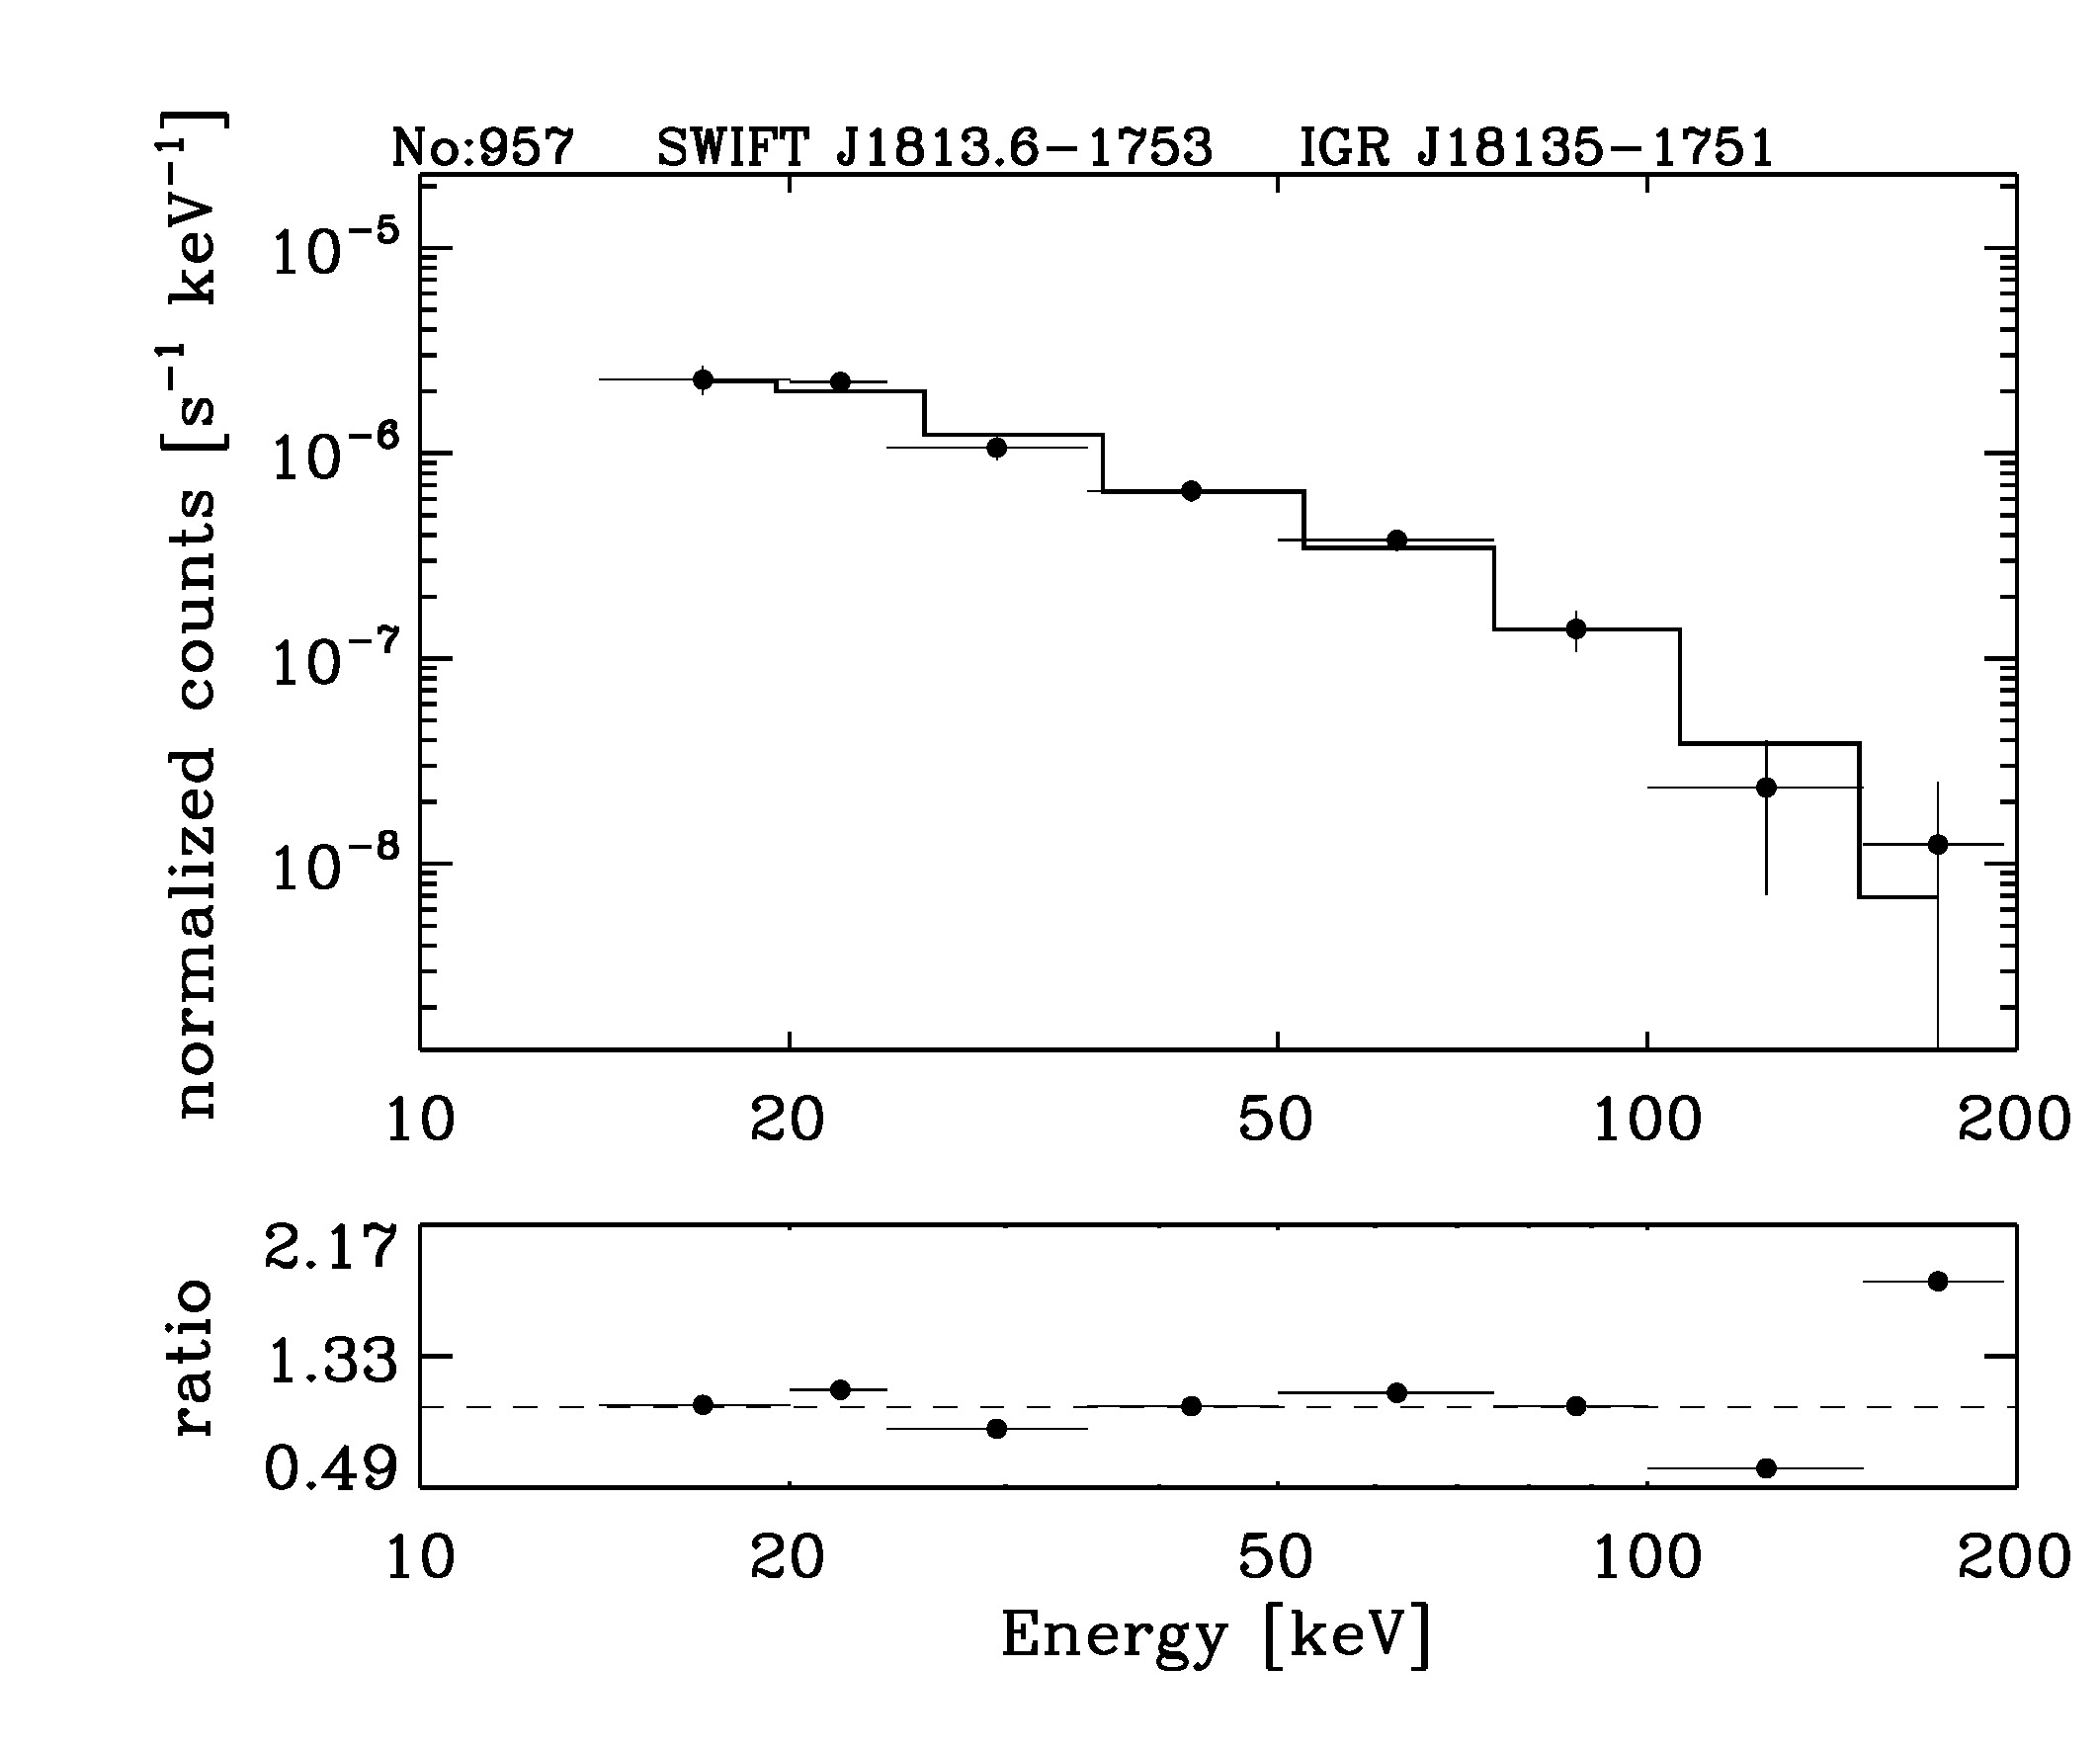 BAT Spectrum for SWIFT J1813.6-1753